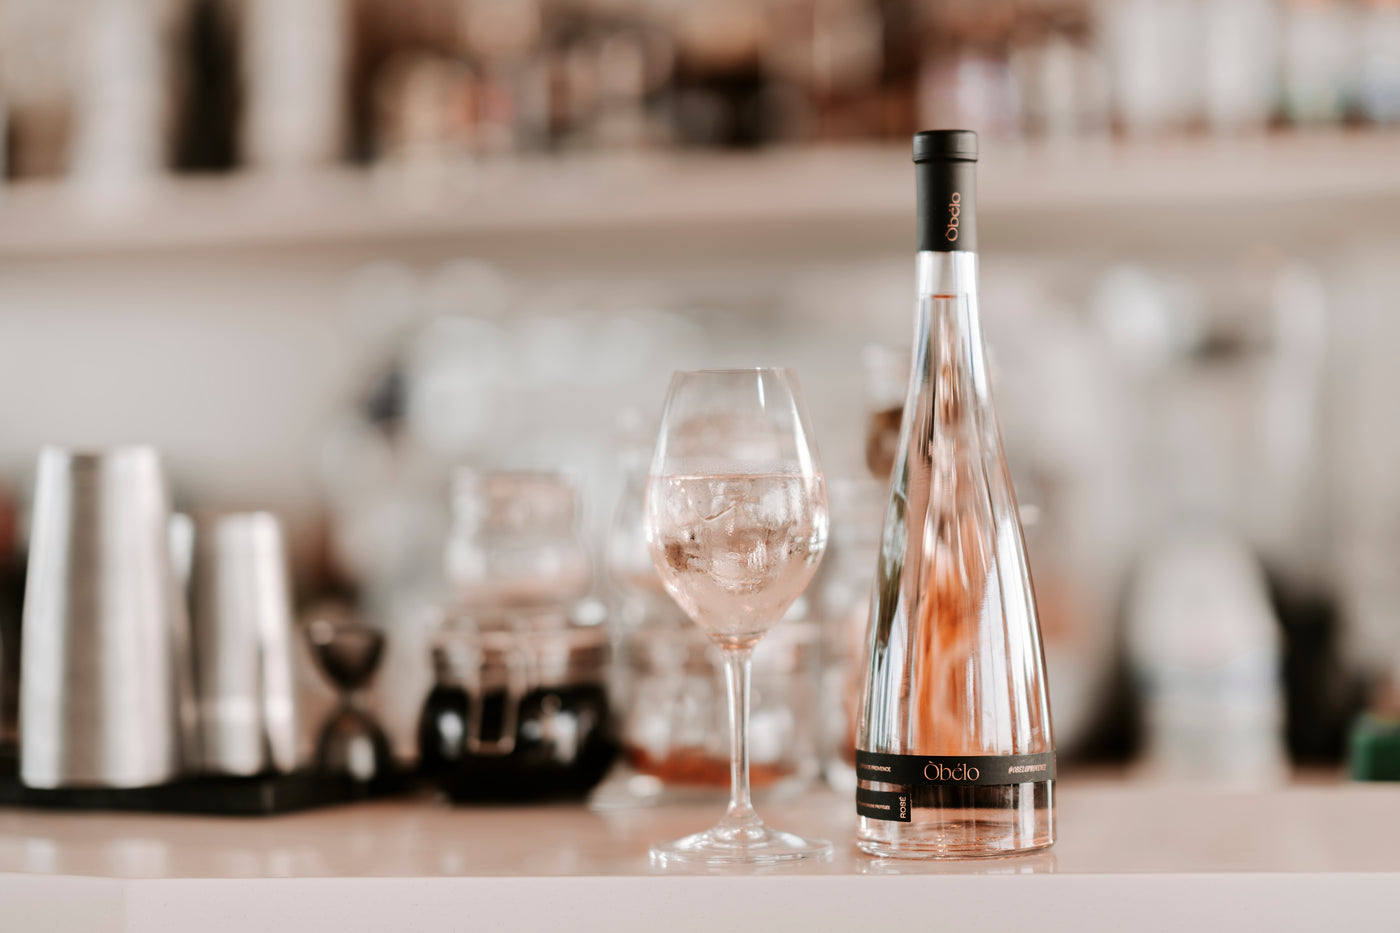 une bouteille de vin rosé obélo provence posée sur un bar